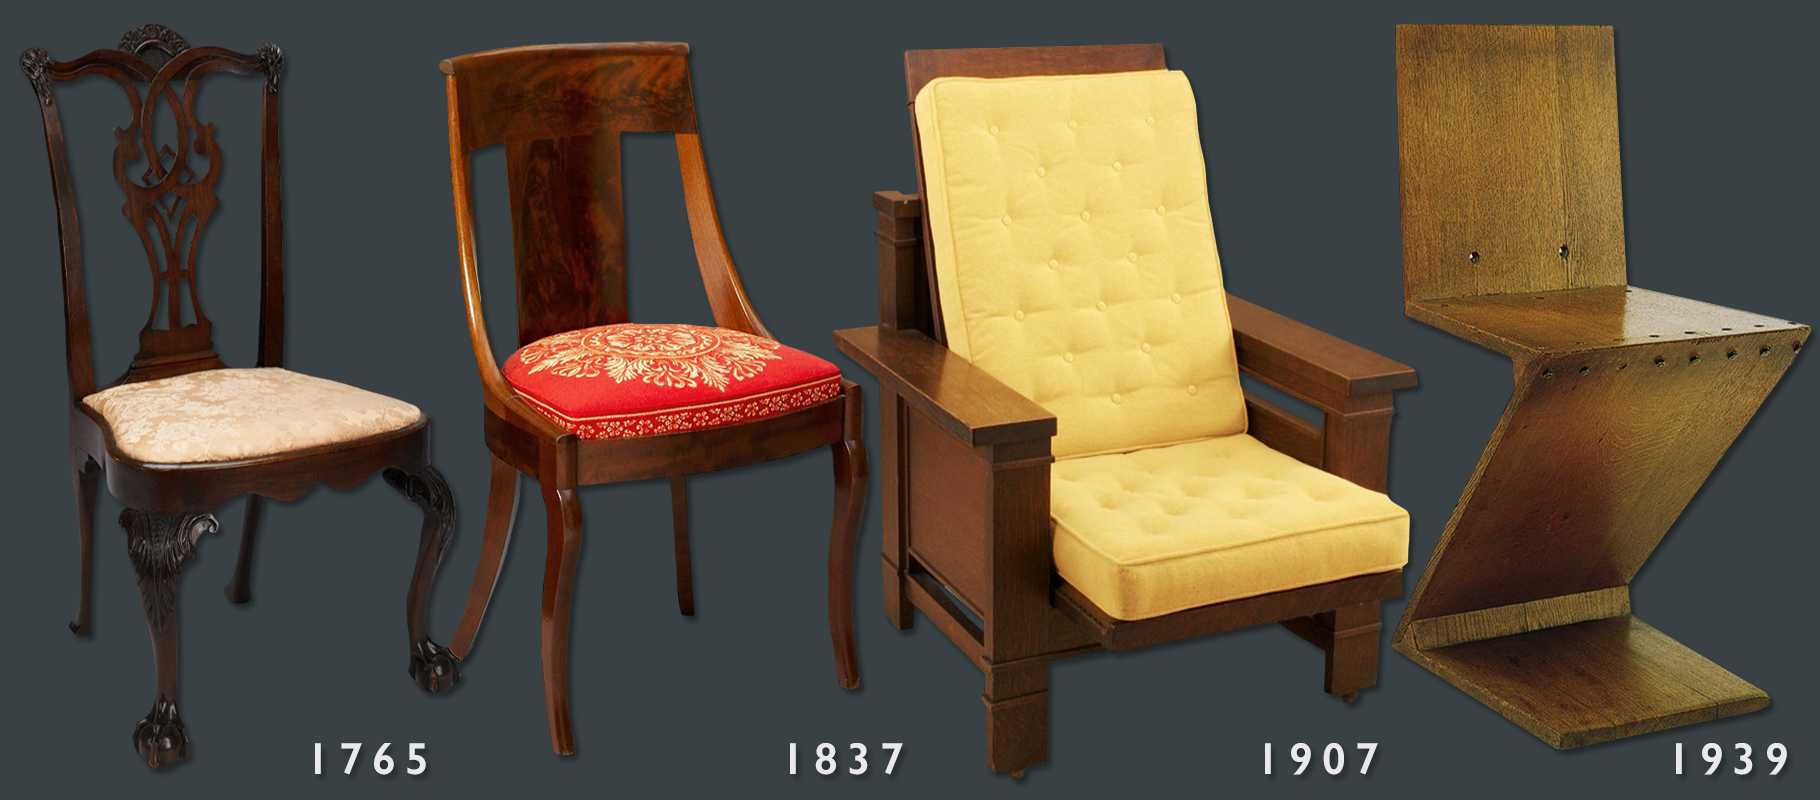 Identify antique furniture - Tudor, baroque, mid-century modern